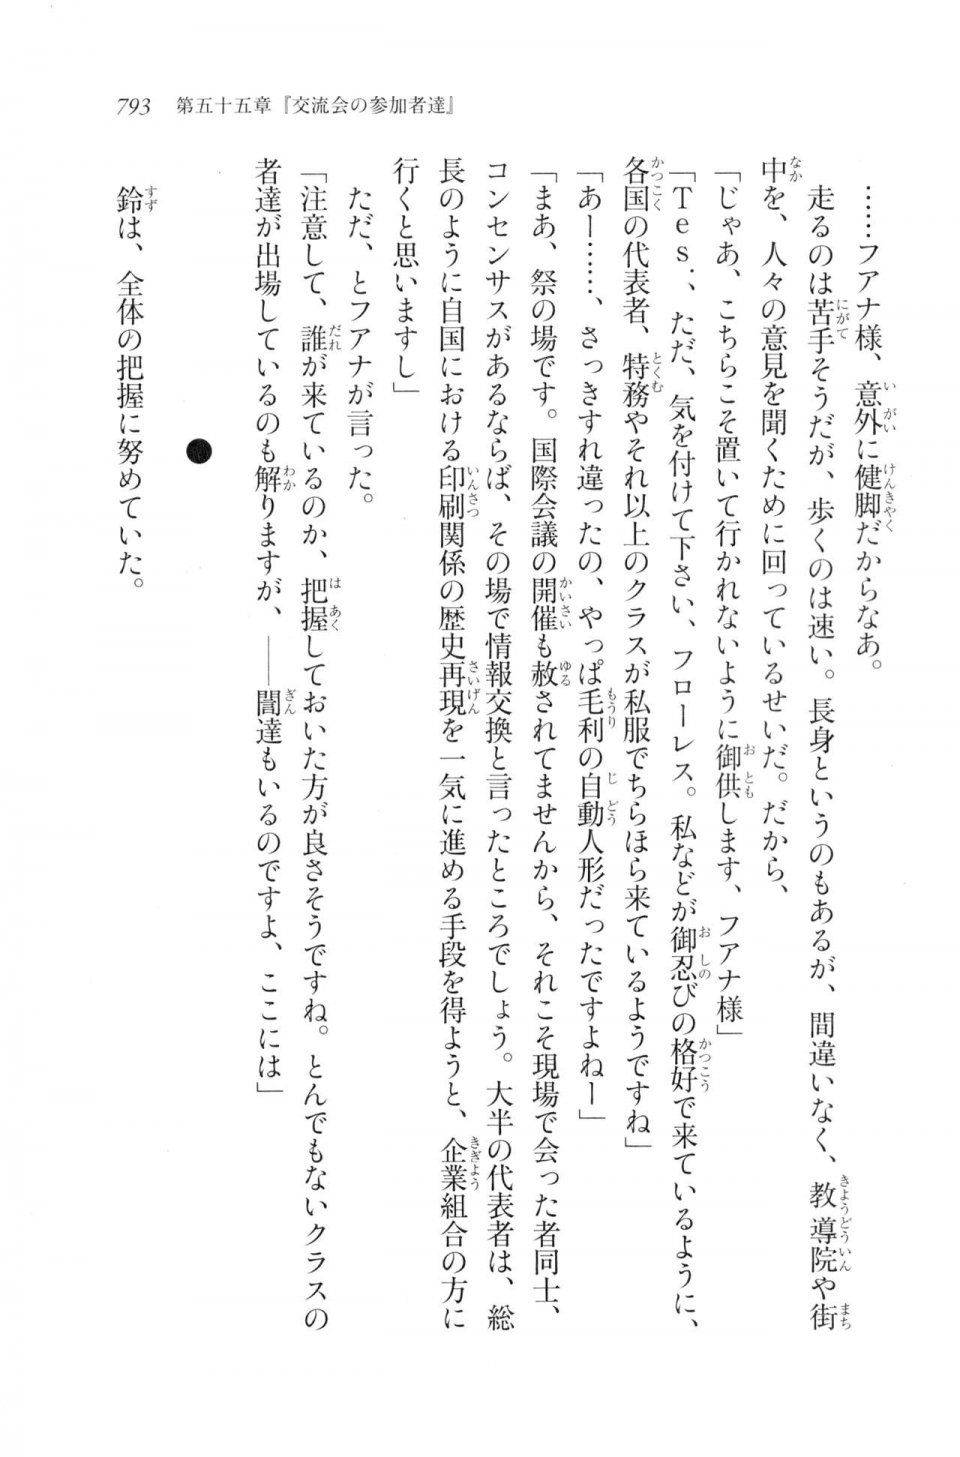 Kyoukai Senjou no Horizon LN Vol 20(8B) - Photo #793